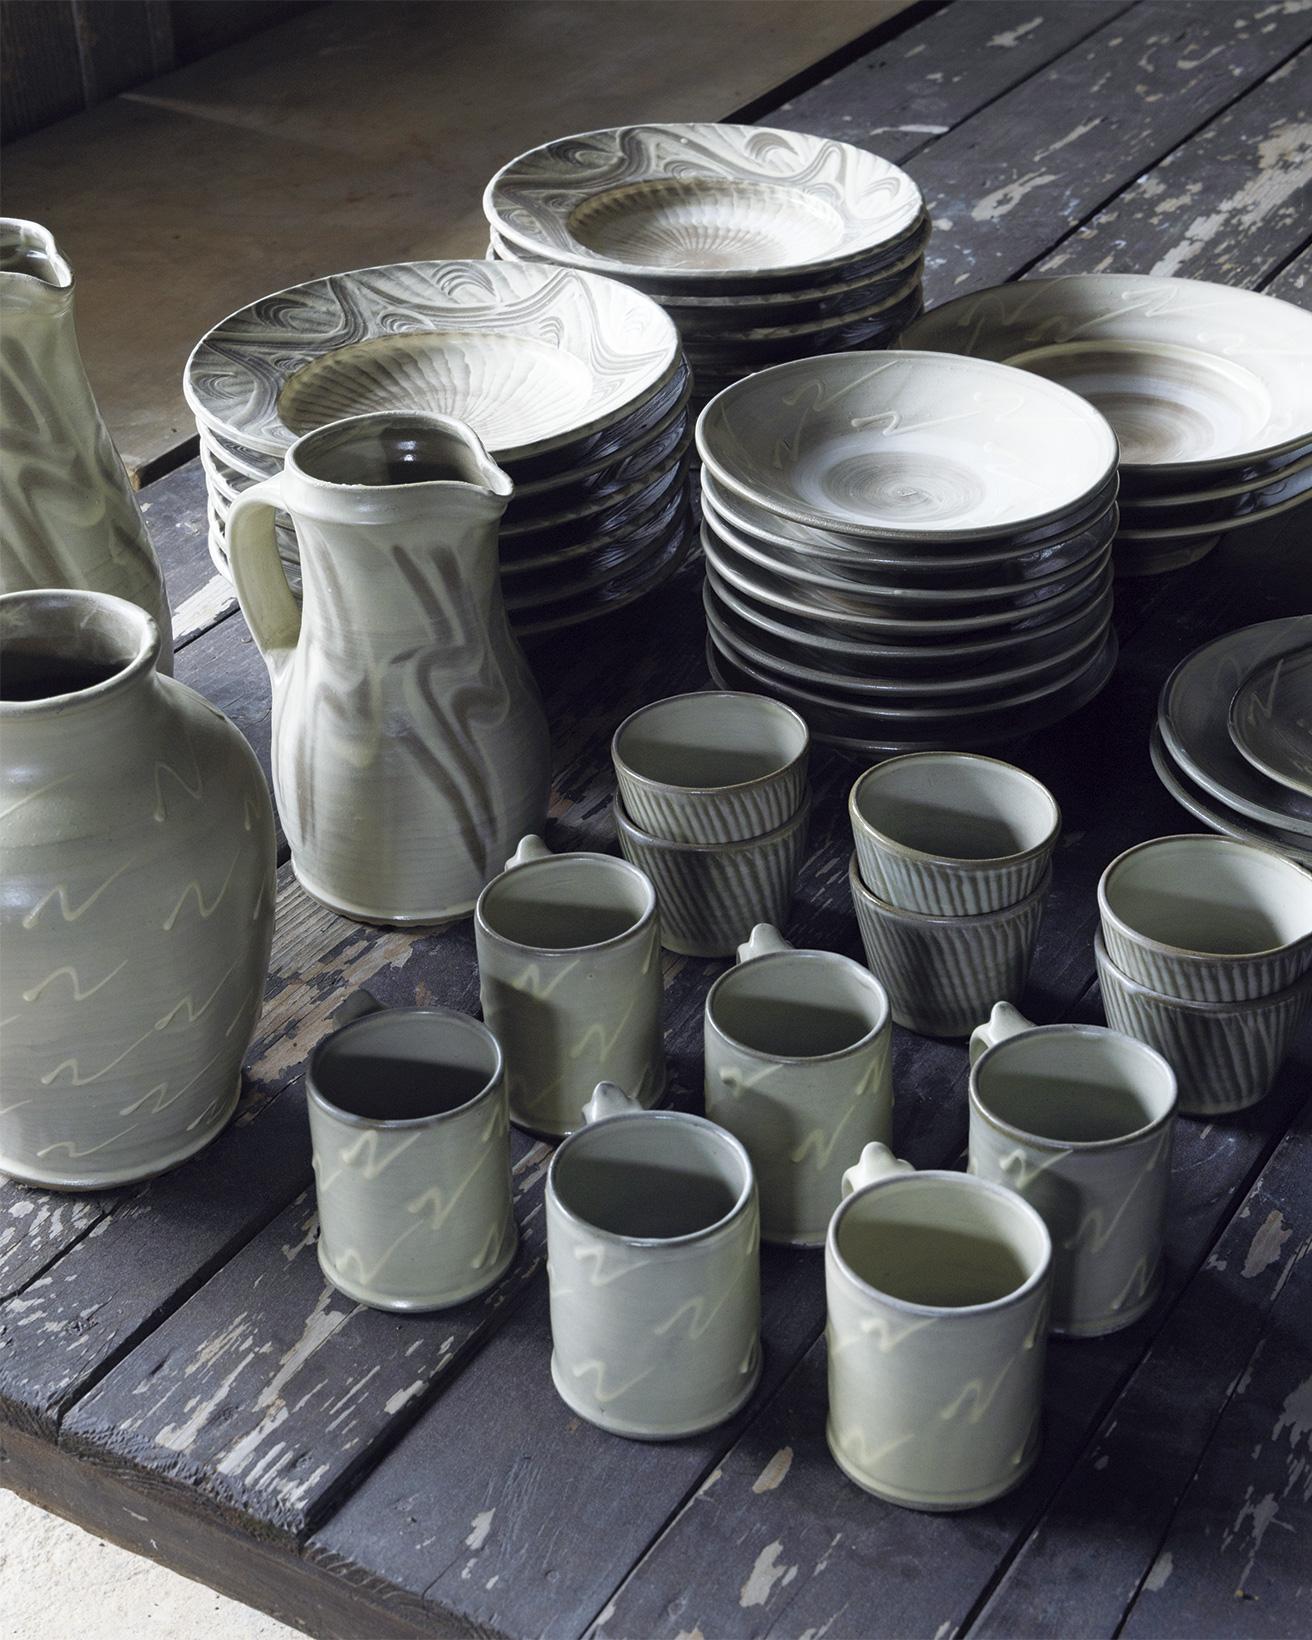 10月13日から販売されるコラボレーションアイテムの一部。マグや皿とともにピッチャーや花器の姿も。グレーの釉薬と抽象的に描かれたNの形が特徴に。